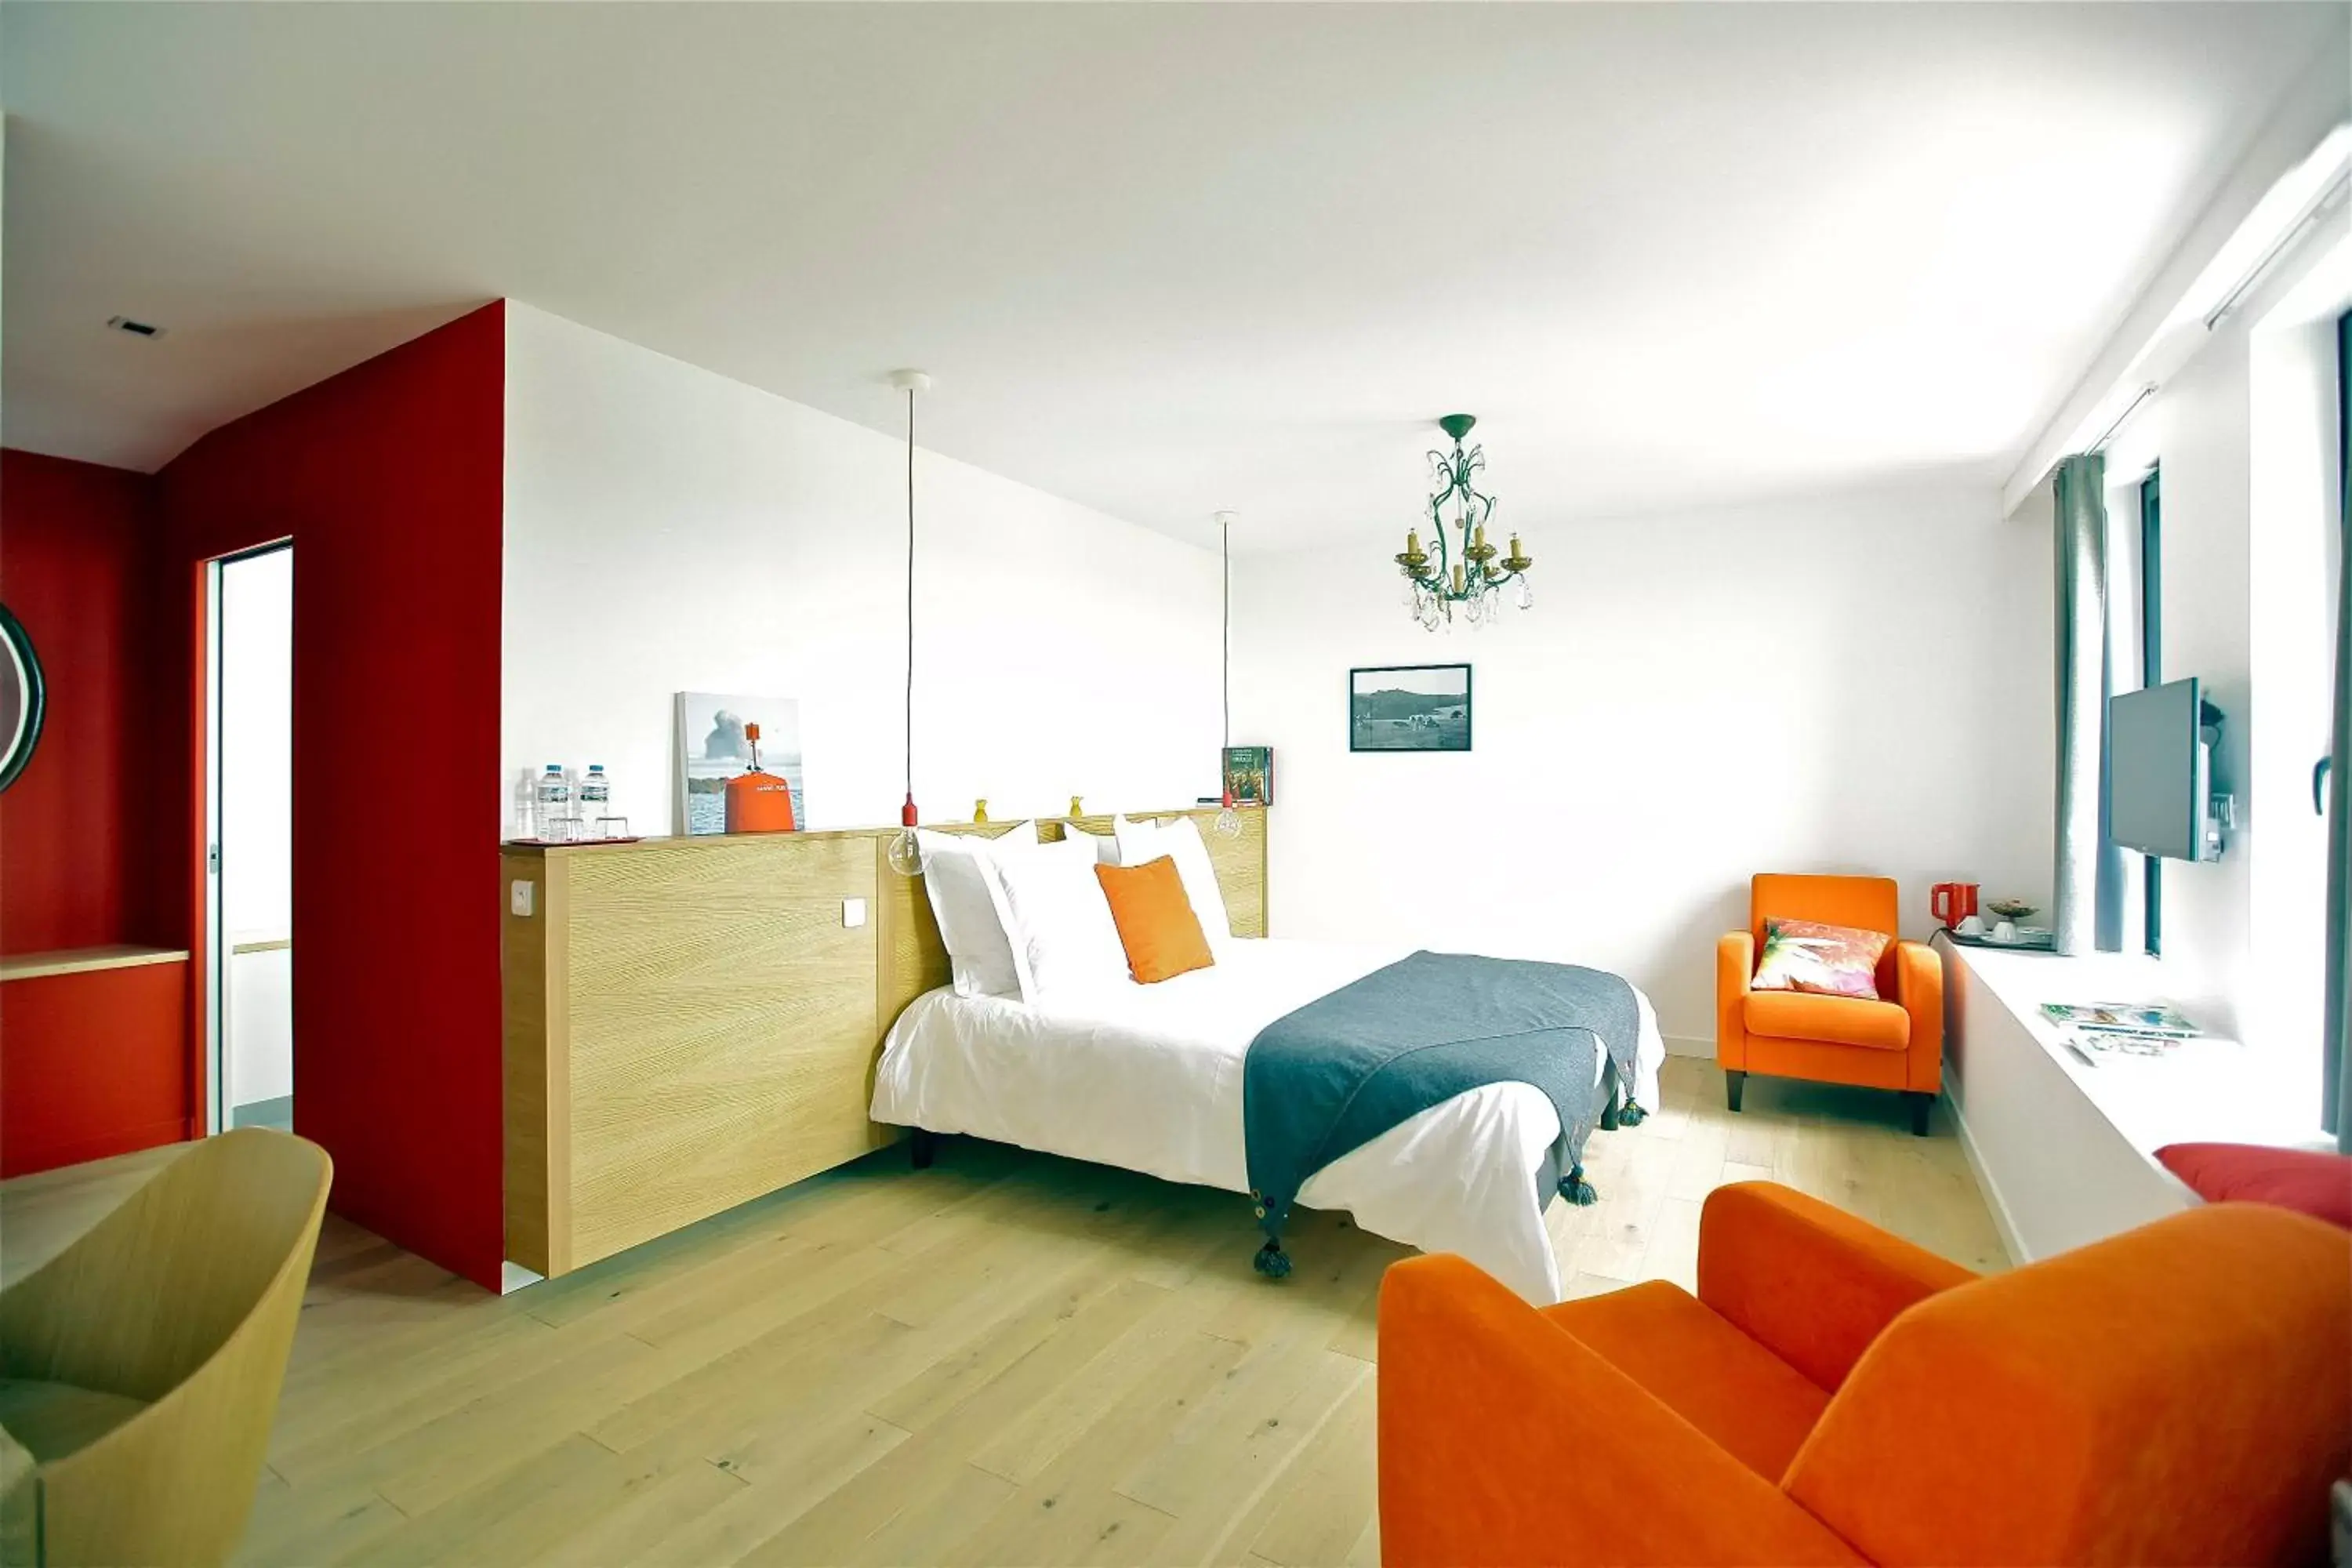 Bedroom, Room Photo in Les Chambres d'hôtes de Kérasquer